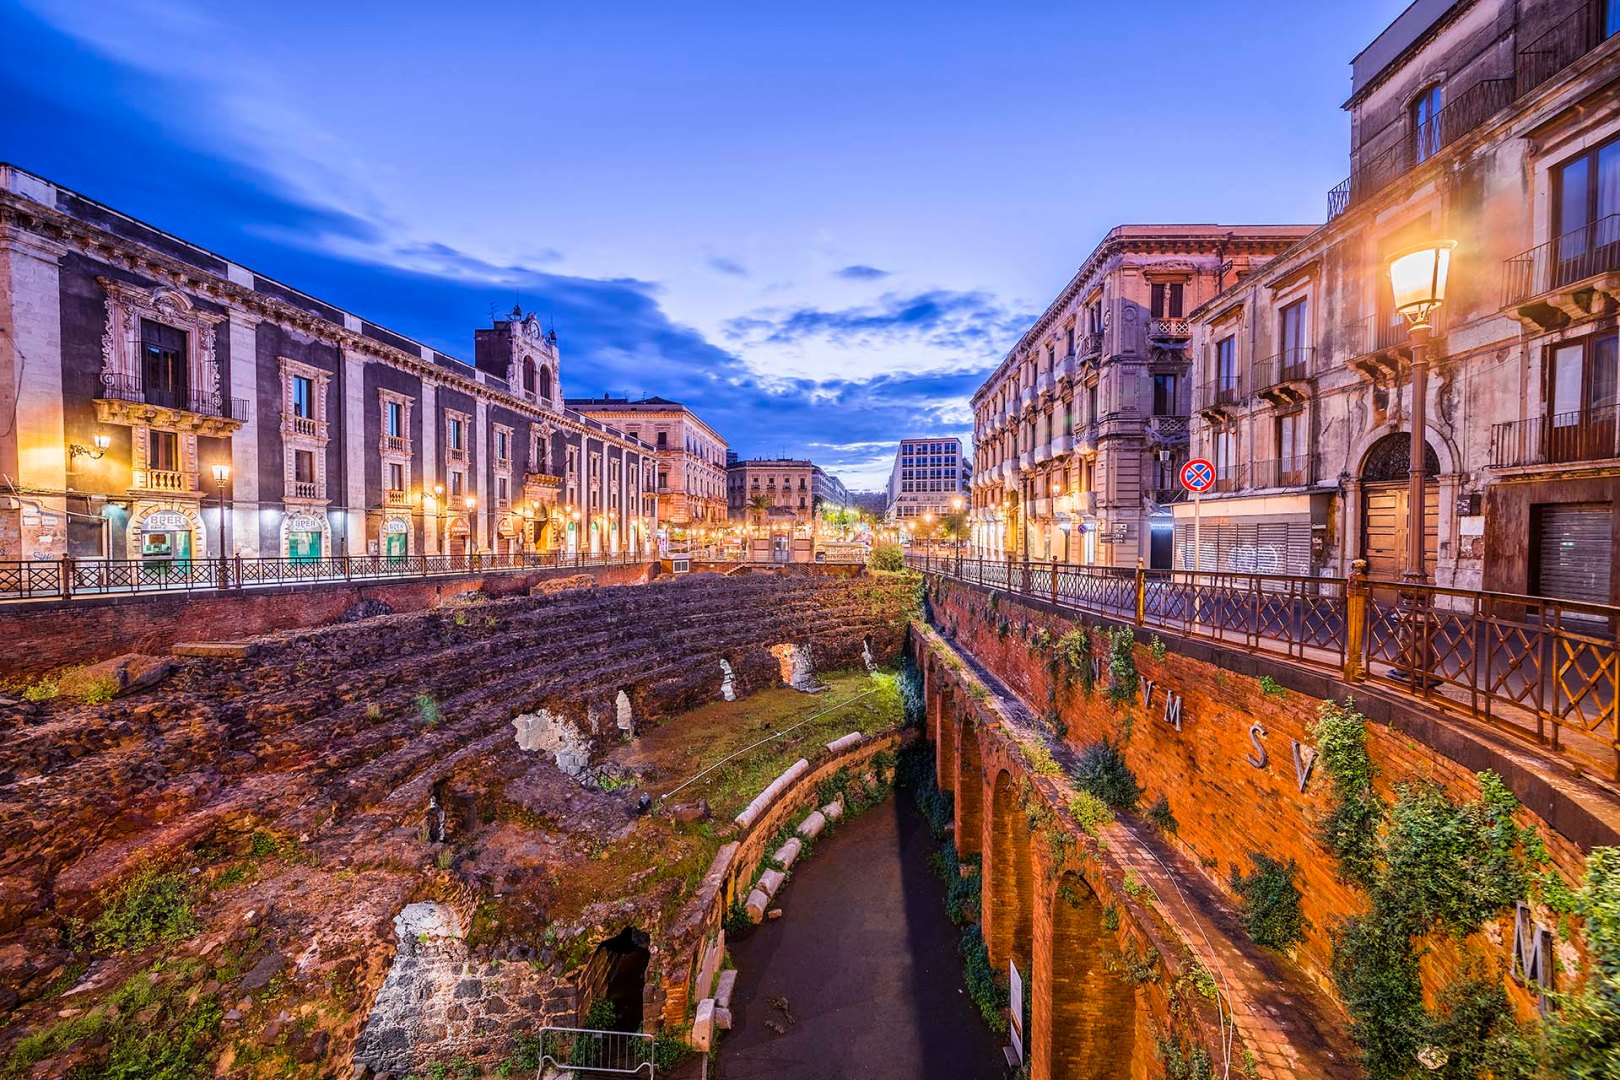 Anfiteatro romano di Catania